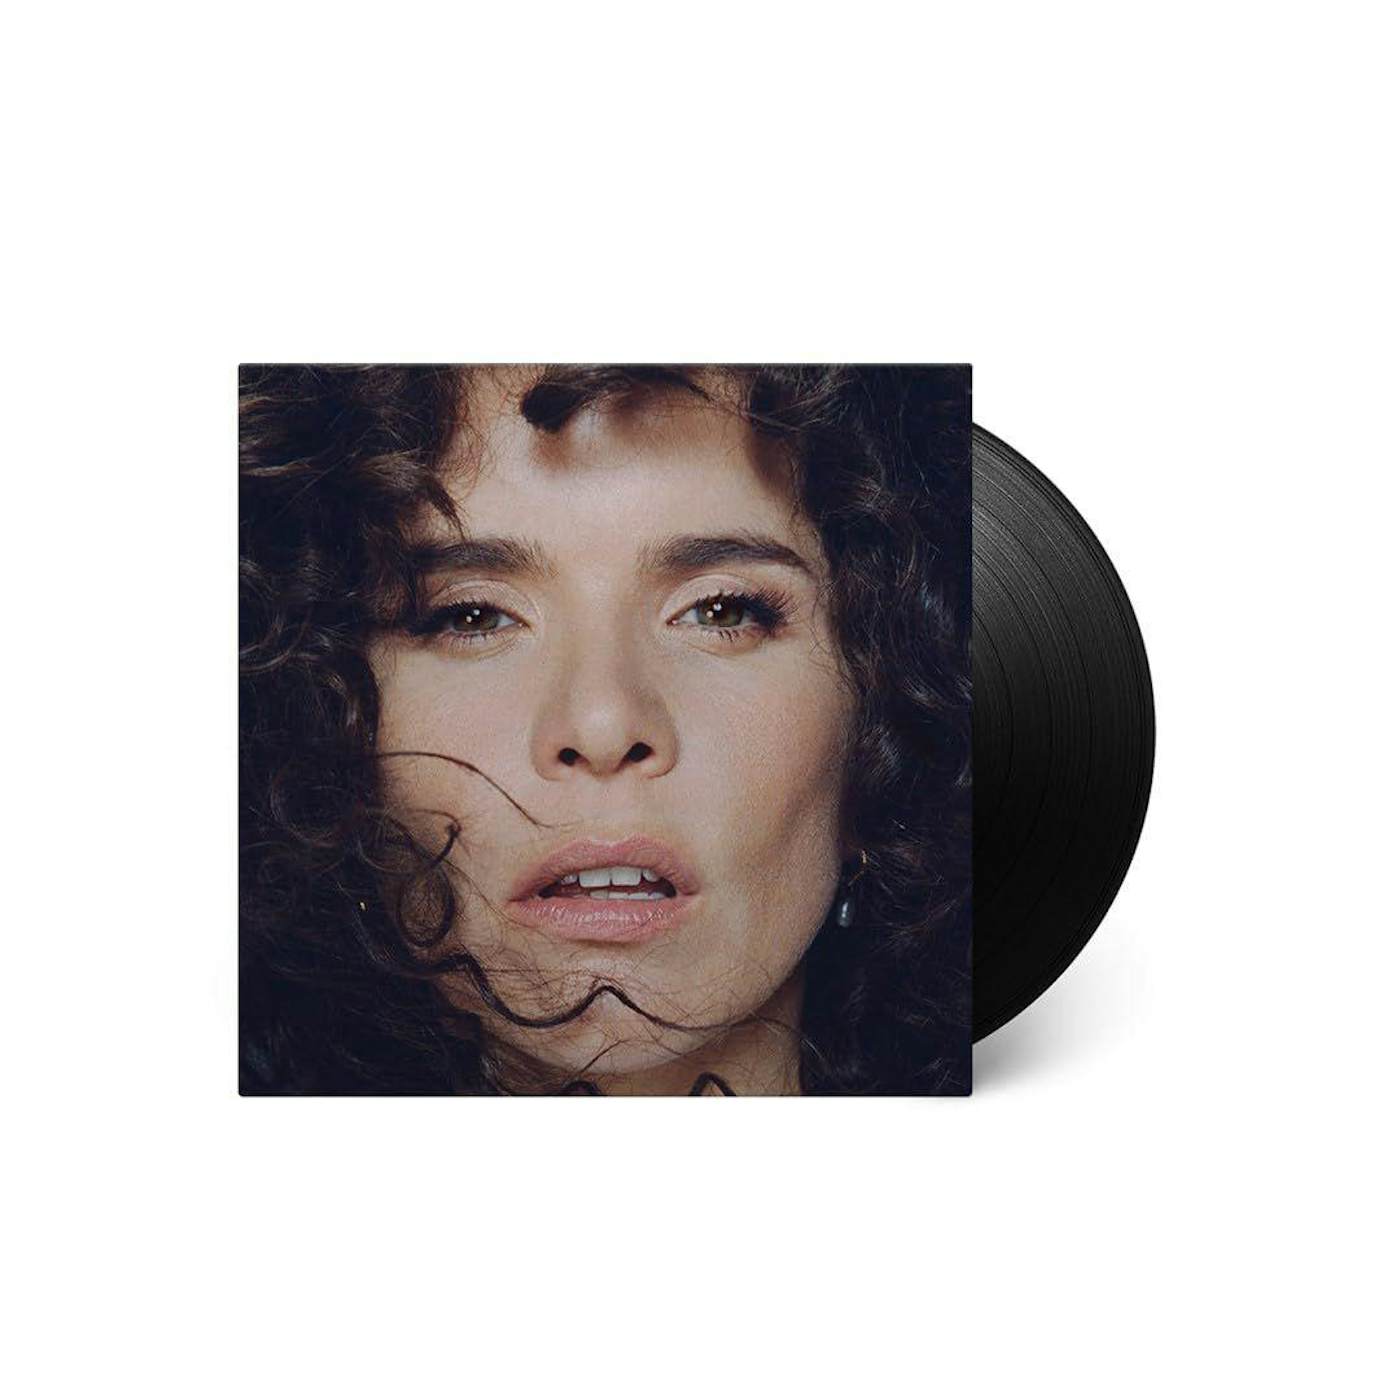 Paloma Faith Glorification Of Sadness Vinyl Record